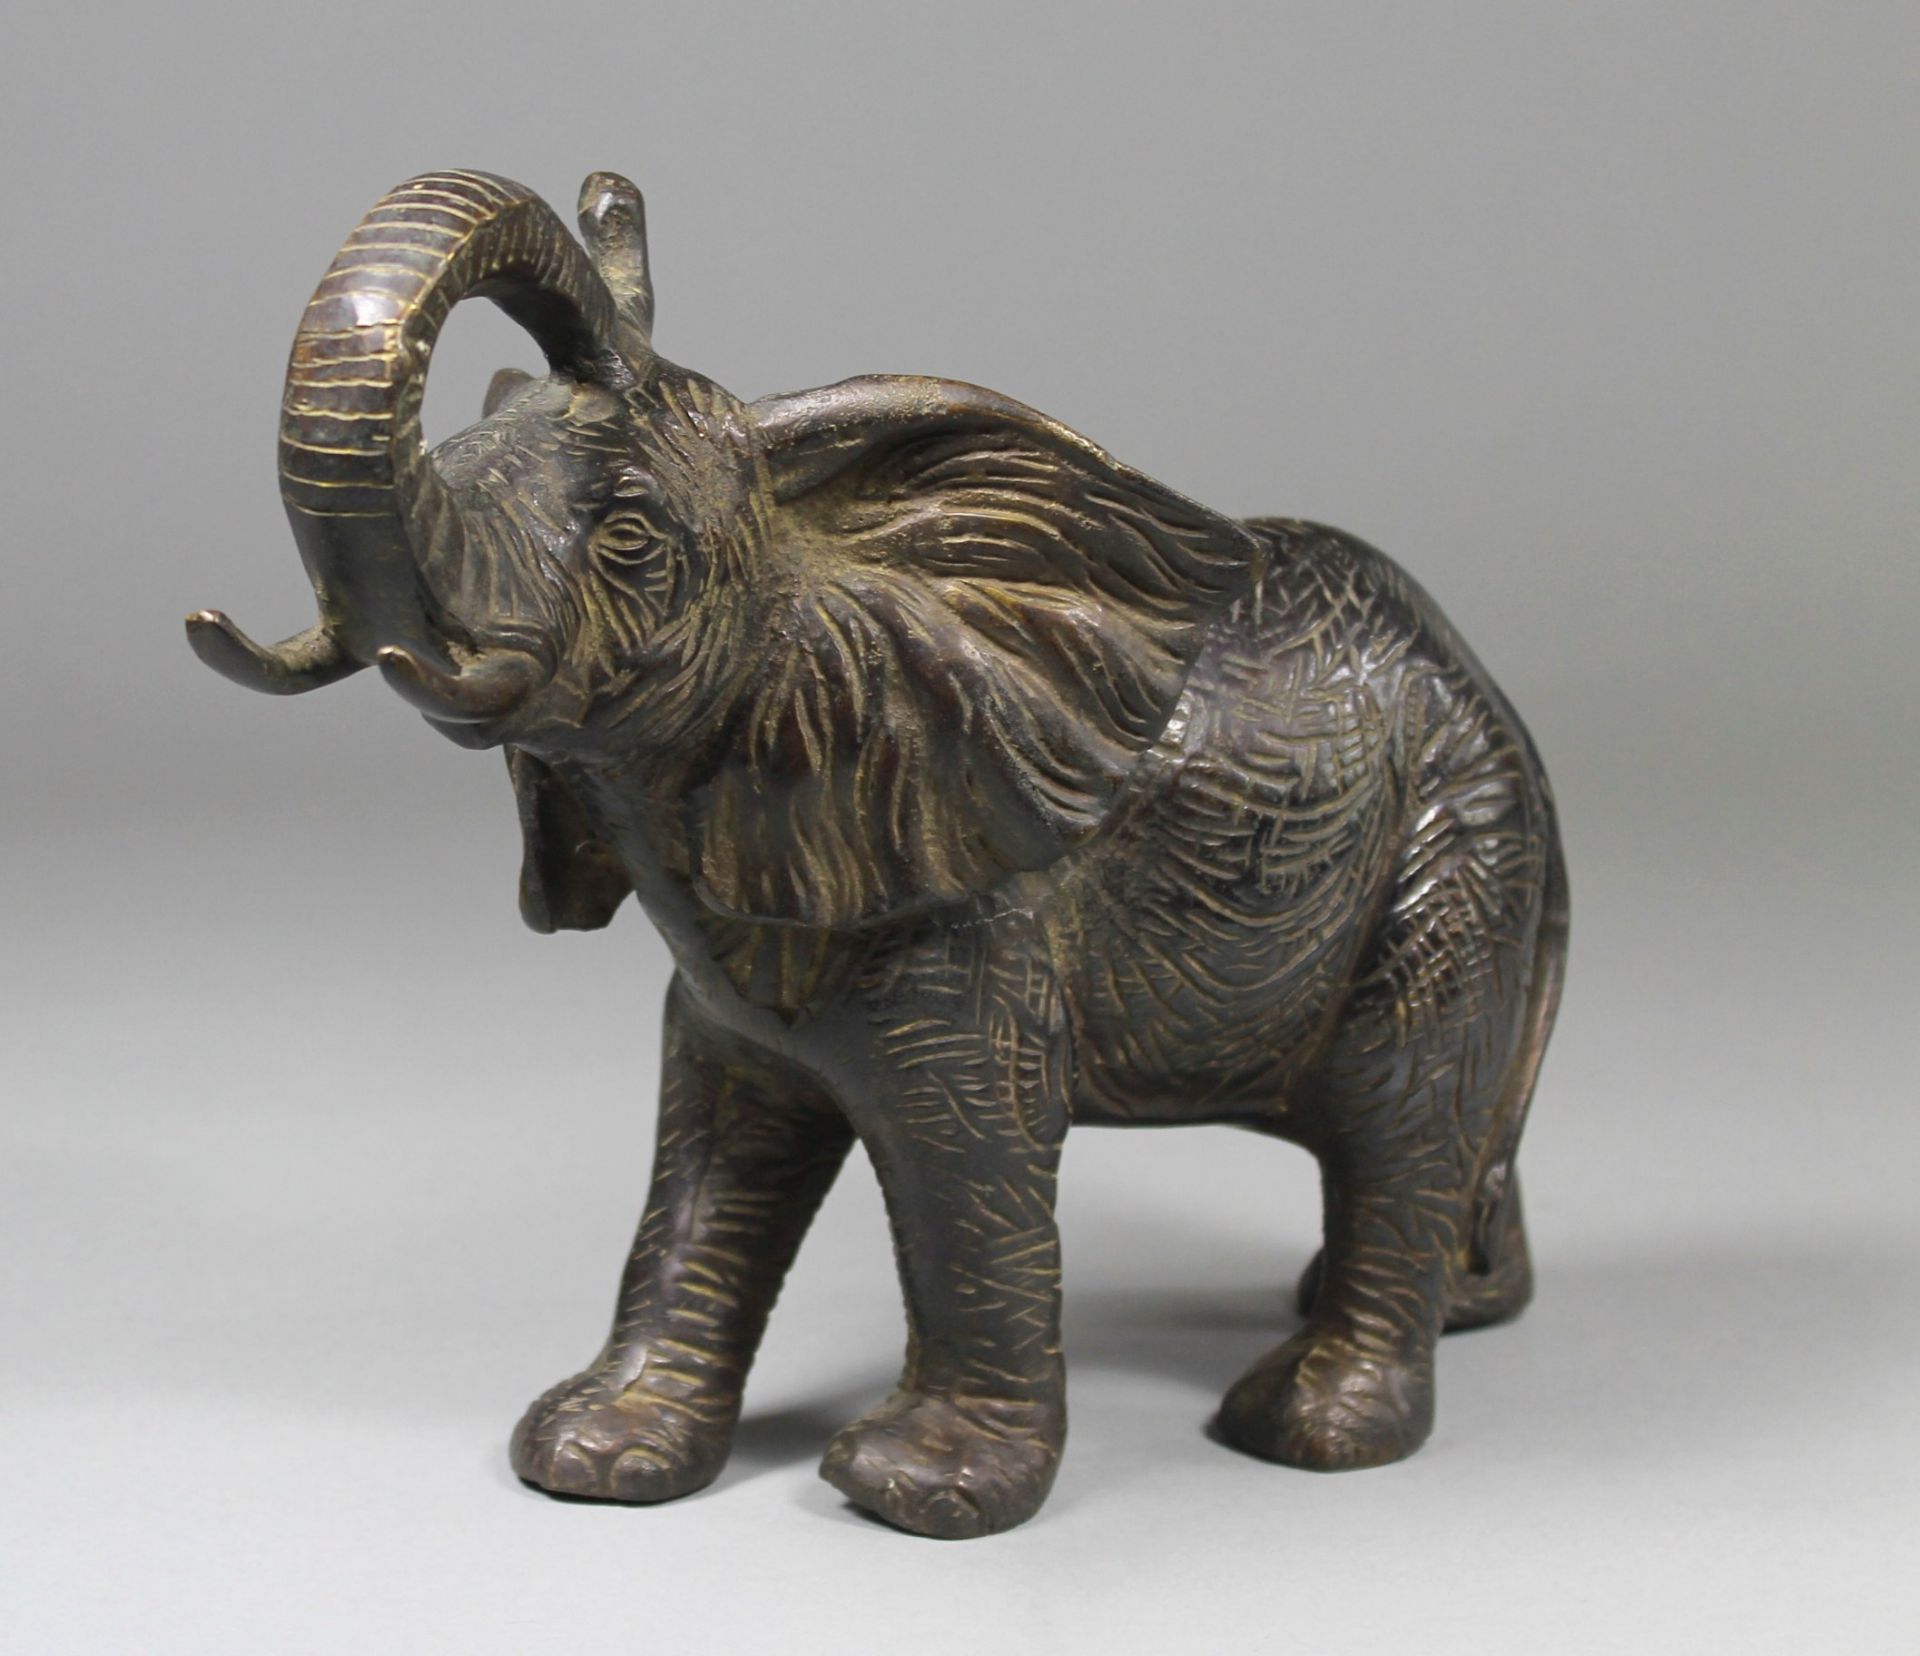 1 Bronzefigur "Elefant", sog. Glücks-Elefant, schwere Aussführung, ca. 22cm x 30cm x 14cm,